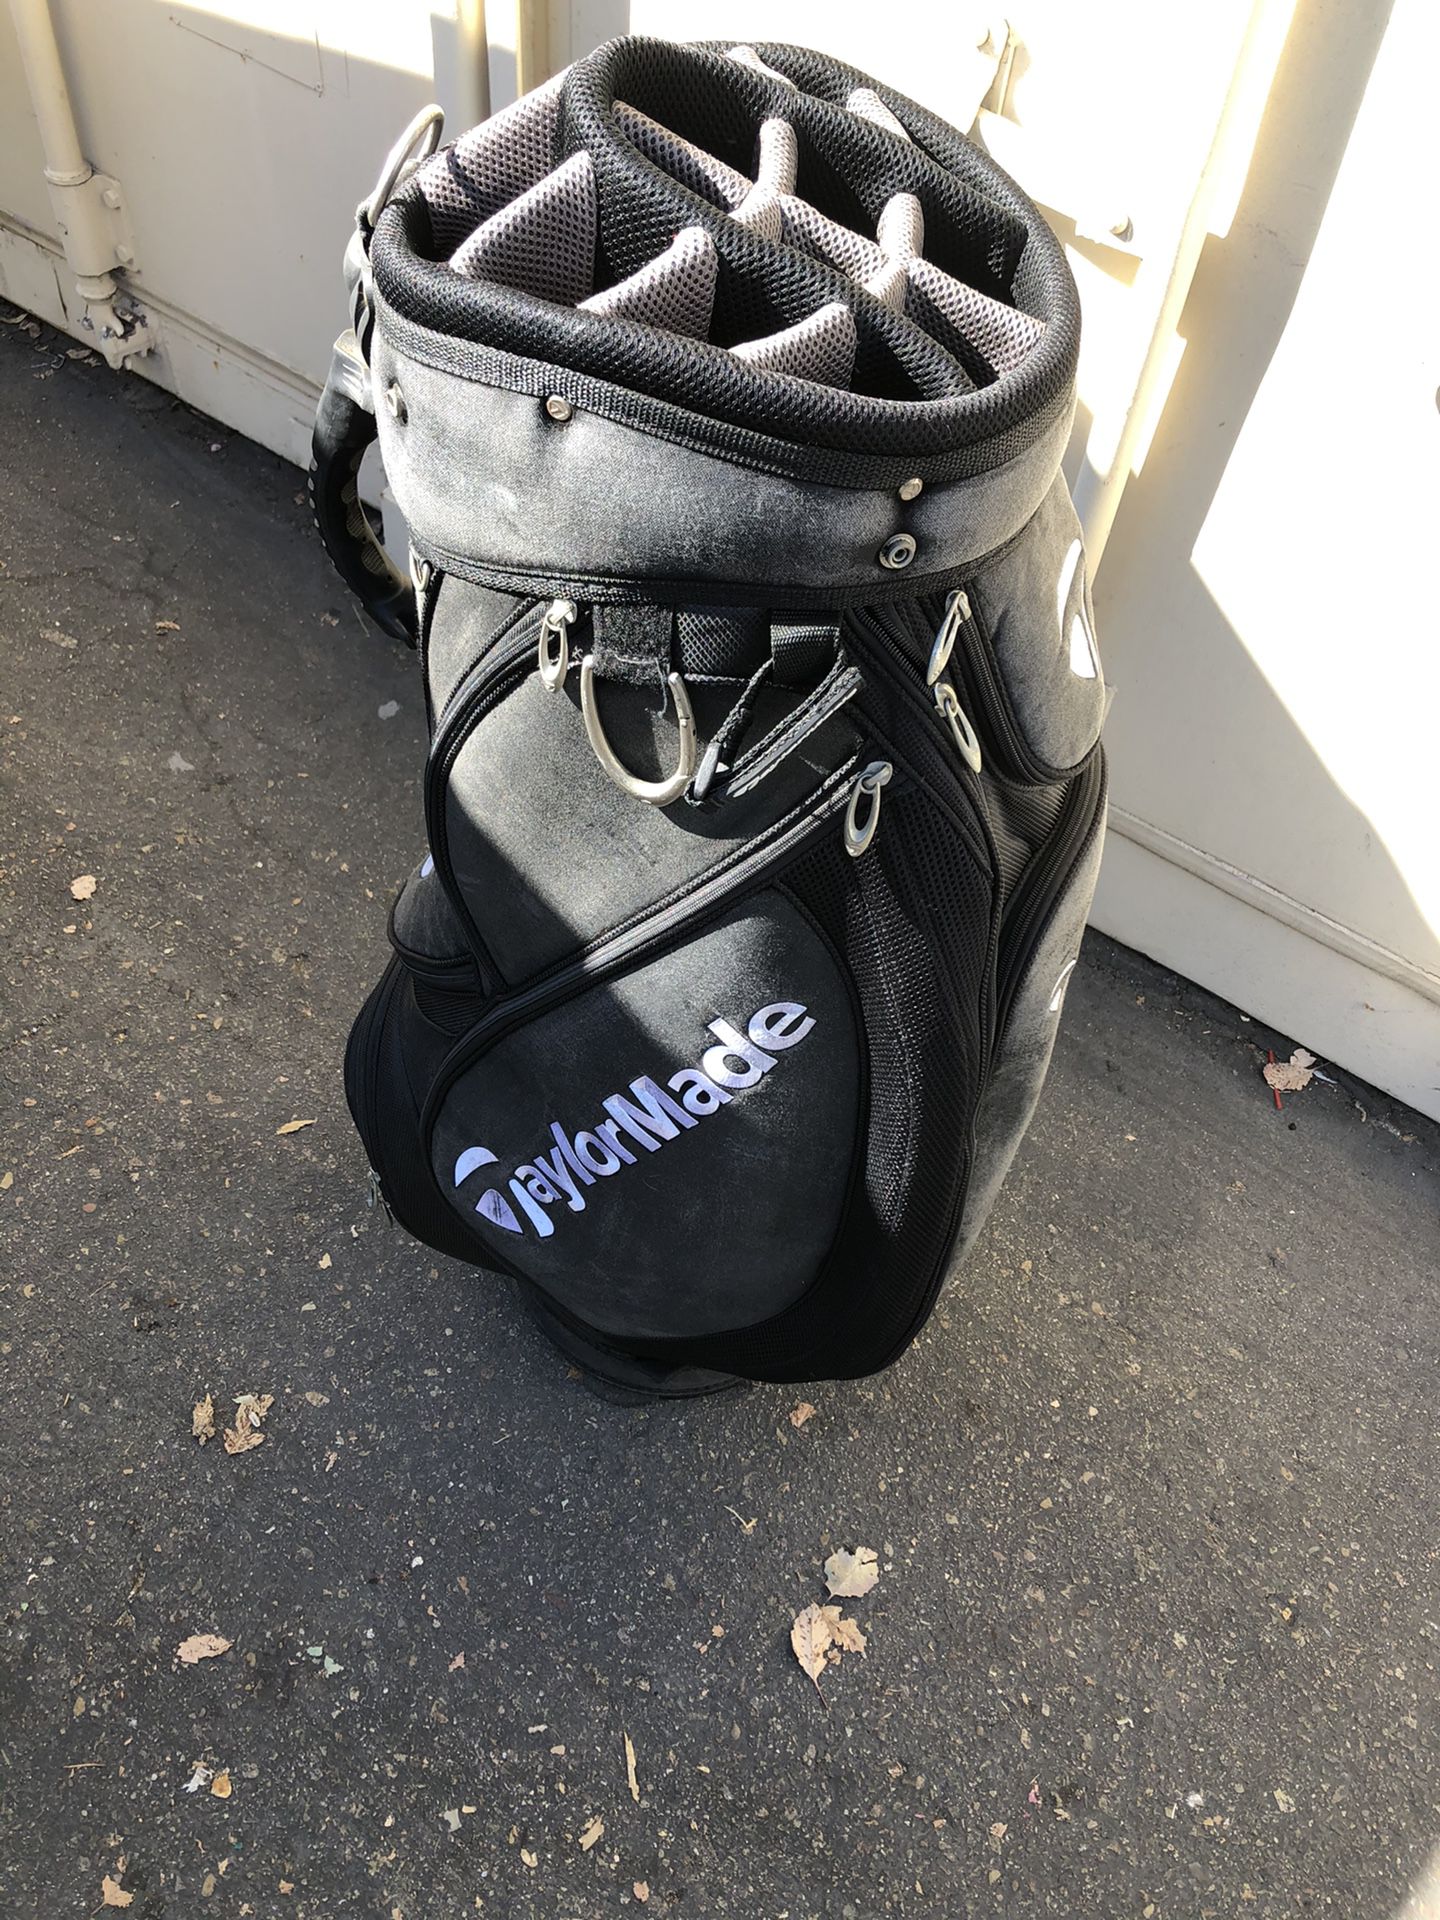 Tailormade golf bag